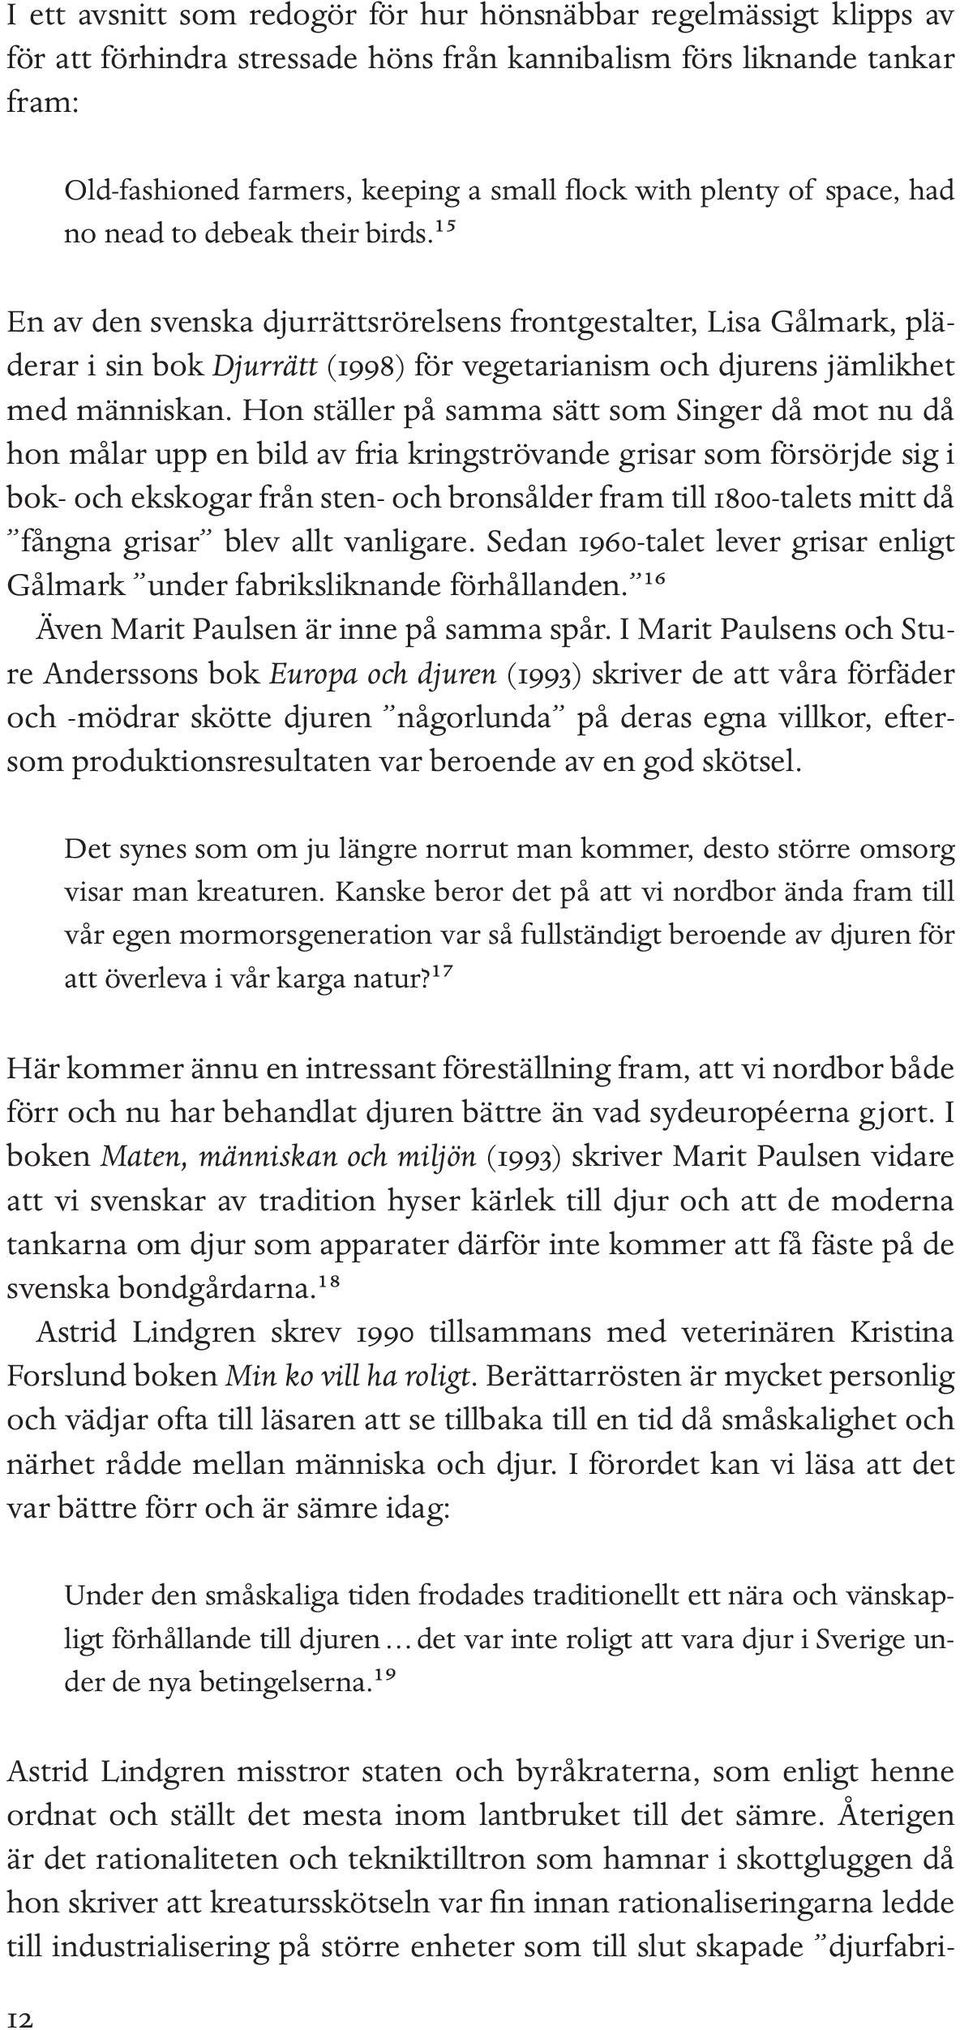 ¹⁵ En av den svenska djurrättsrörelsens frontgestalter, Lisa Gålmark, pläderar i sin bok Djurrätt (1998) för vegetarianism och djurens jämlikhet med människan.